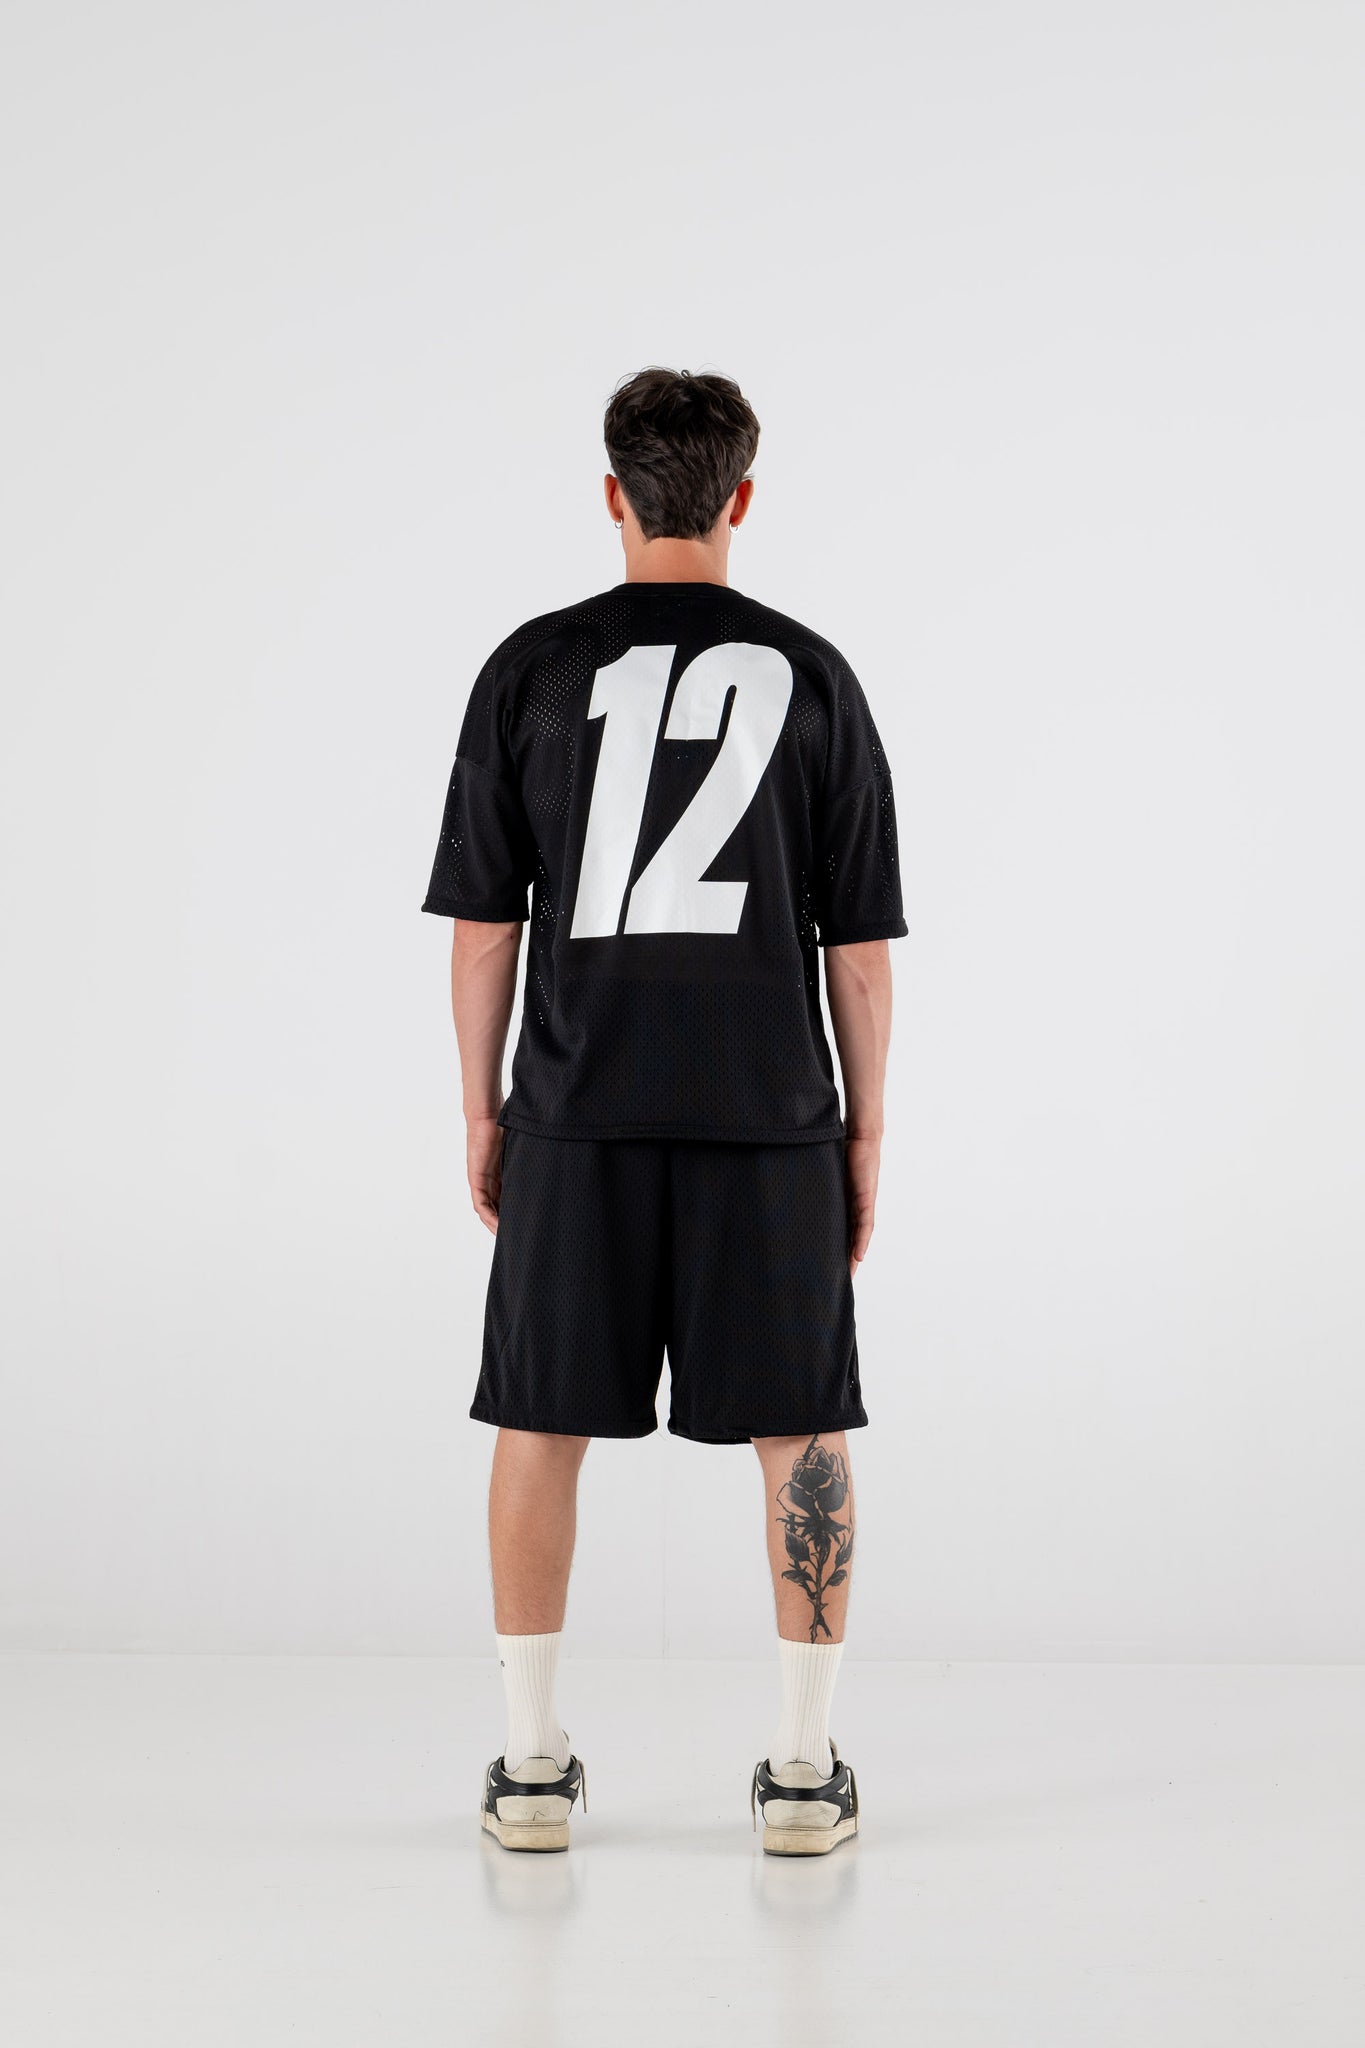 T-Shirt Over “FORSUMMER” Soccer Black